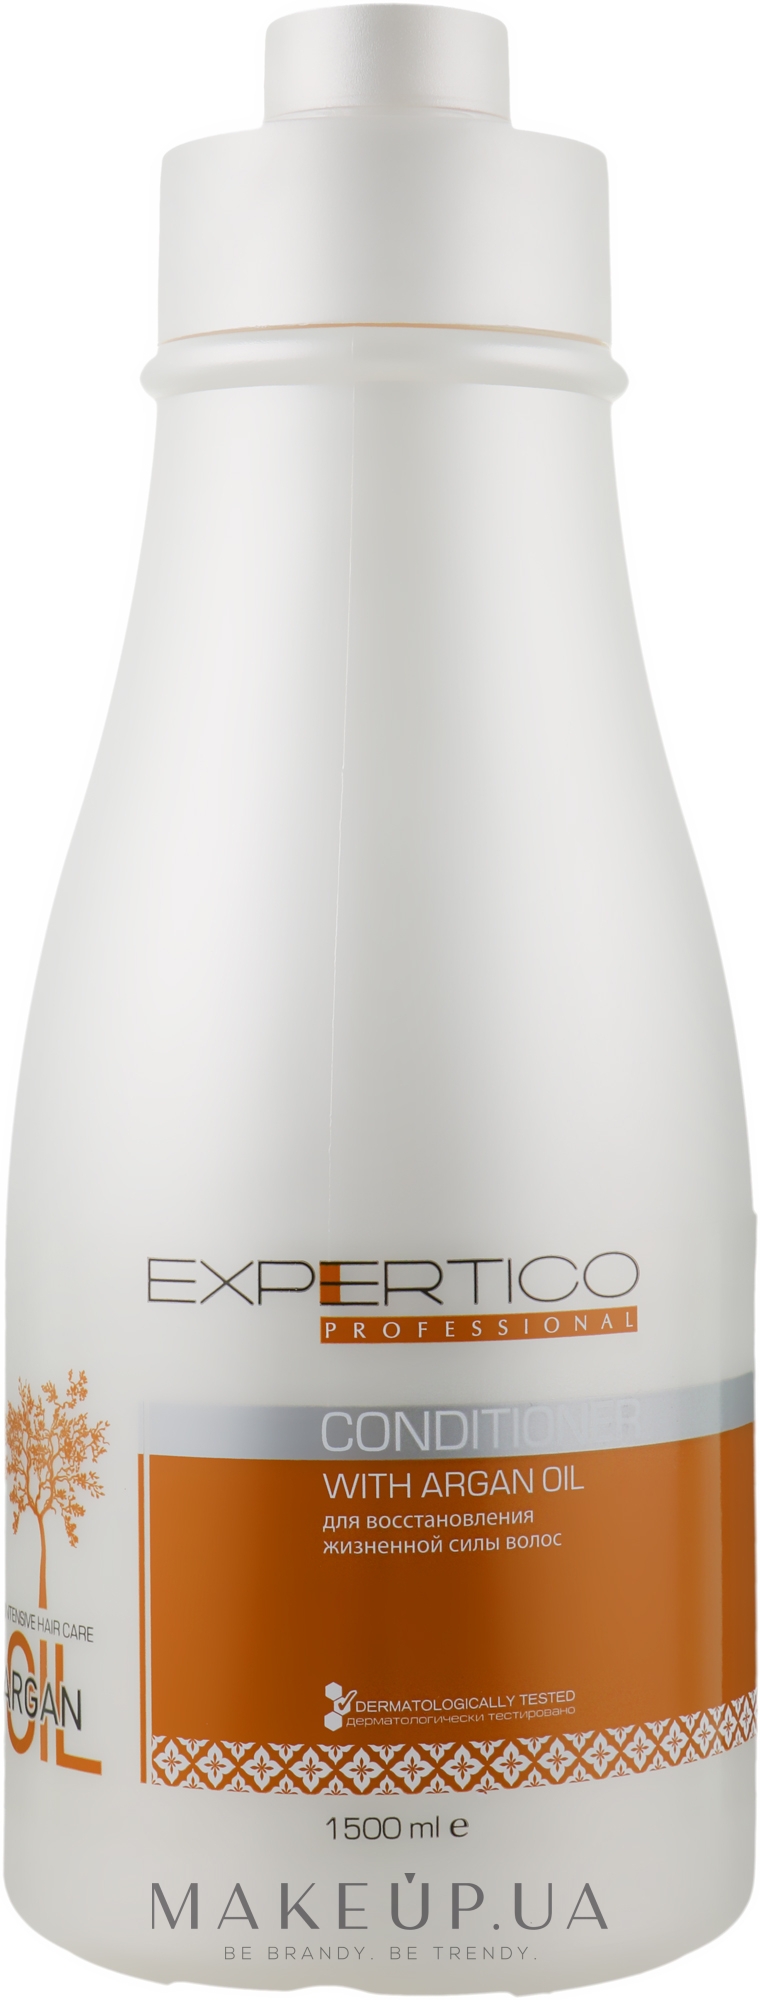 Кондиционер для волос на основе арганового масла - Tico Professional Expertico Argan Oil Conditioner — фото 1500ml